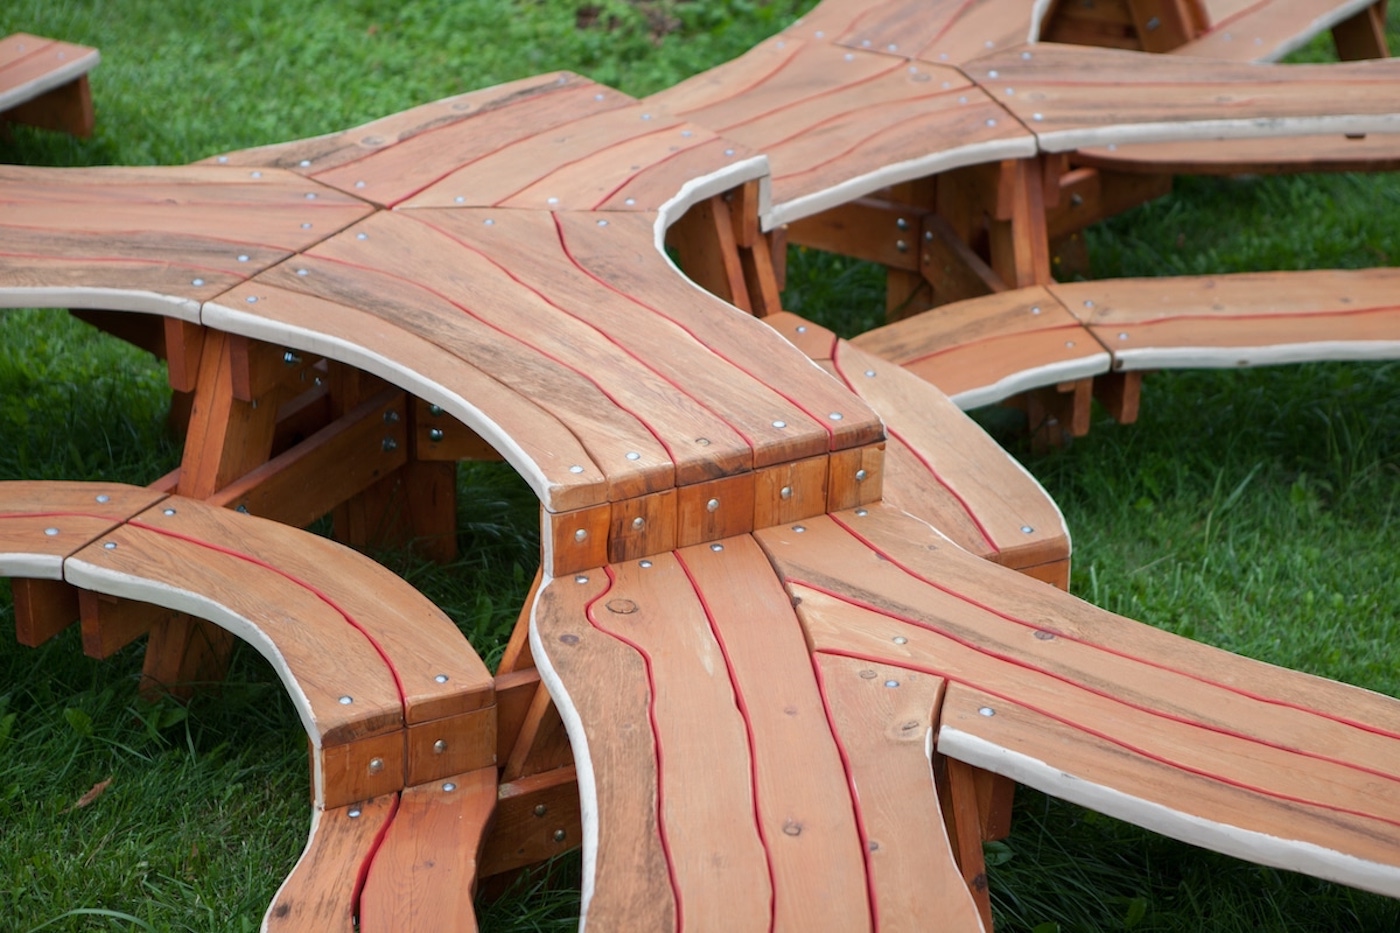 L’artiste Michael Beitz a conçu une table géante en forme d’arbre pour rassembler tout le monde